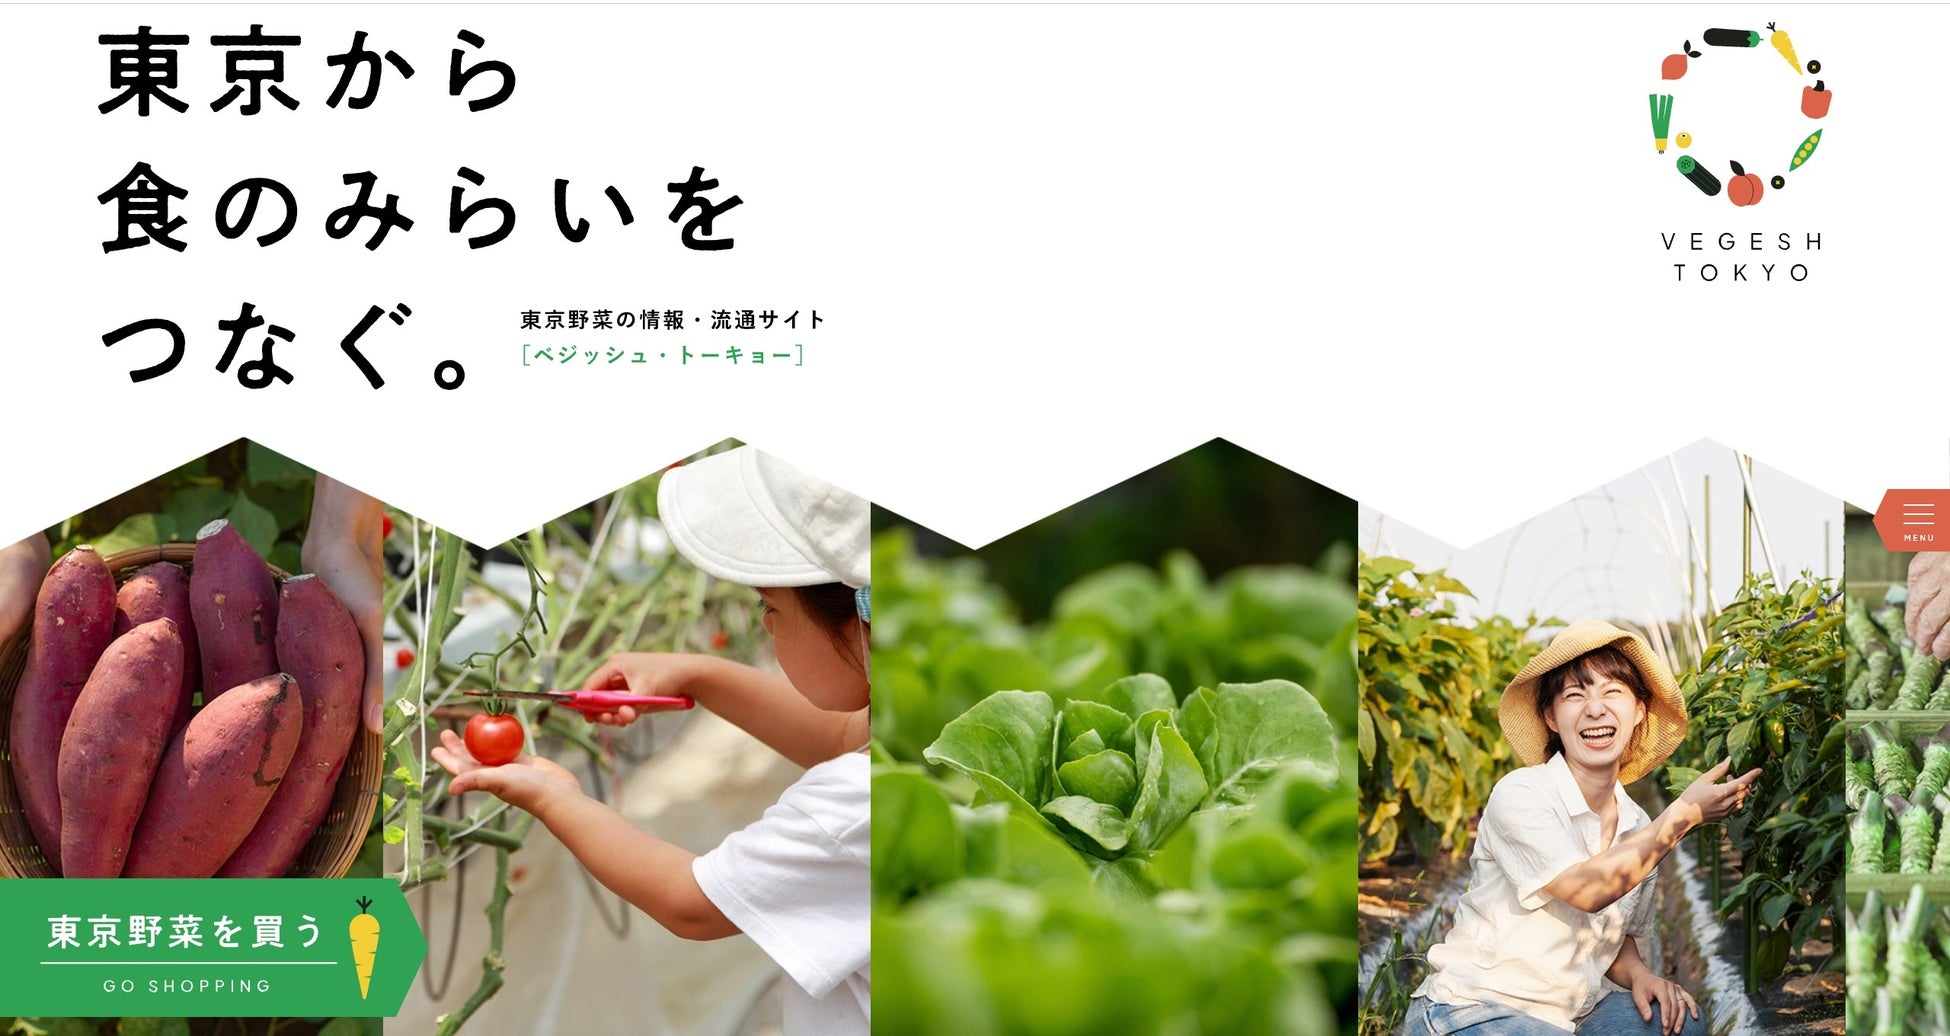 東京野菜の地産地消プロジェクト「VEGESH TOKYO」は、株式会社ルミネと連携し、期間限定でニュウマン新宿にて開催する「LUMINE AGRI MARCHE」に出店。のサブ画像1